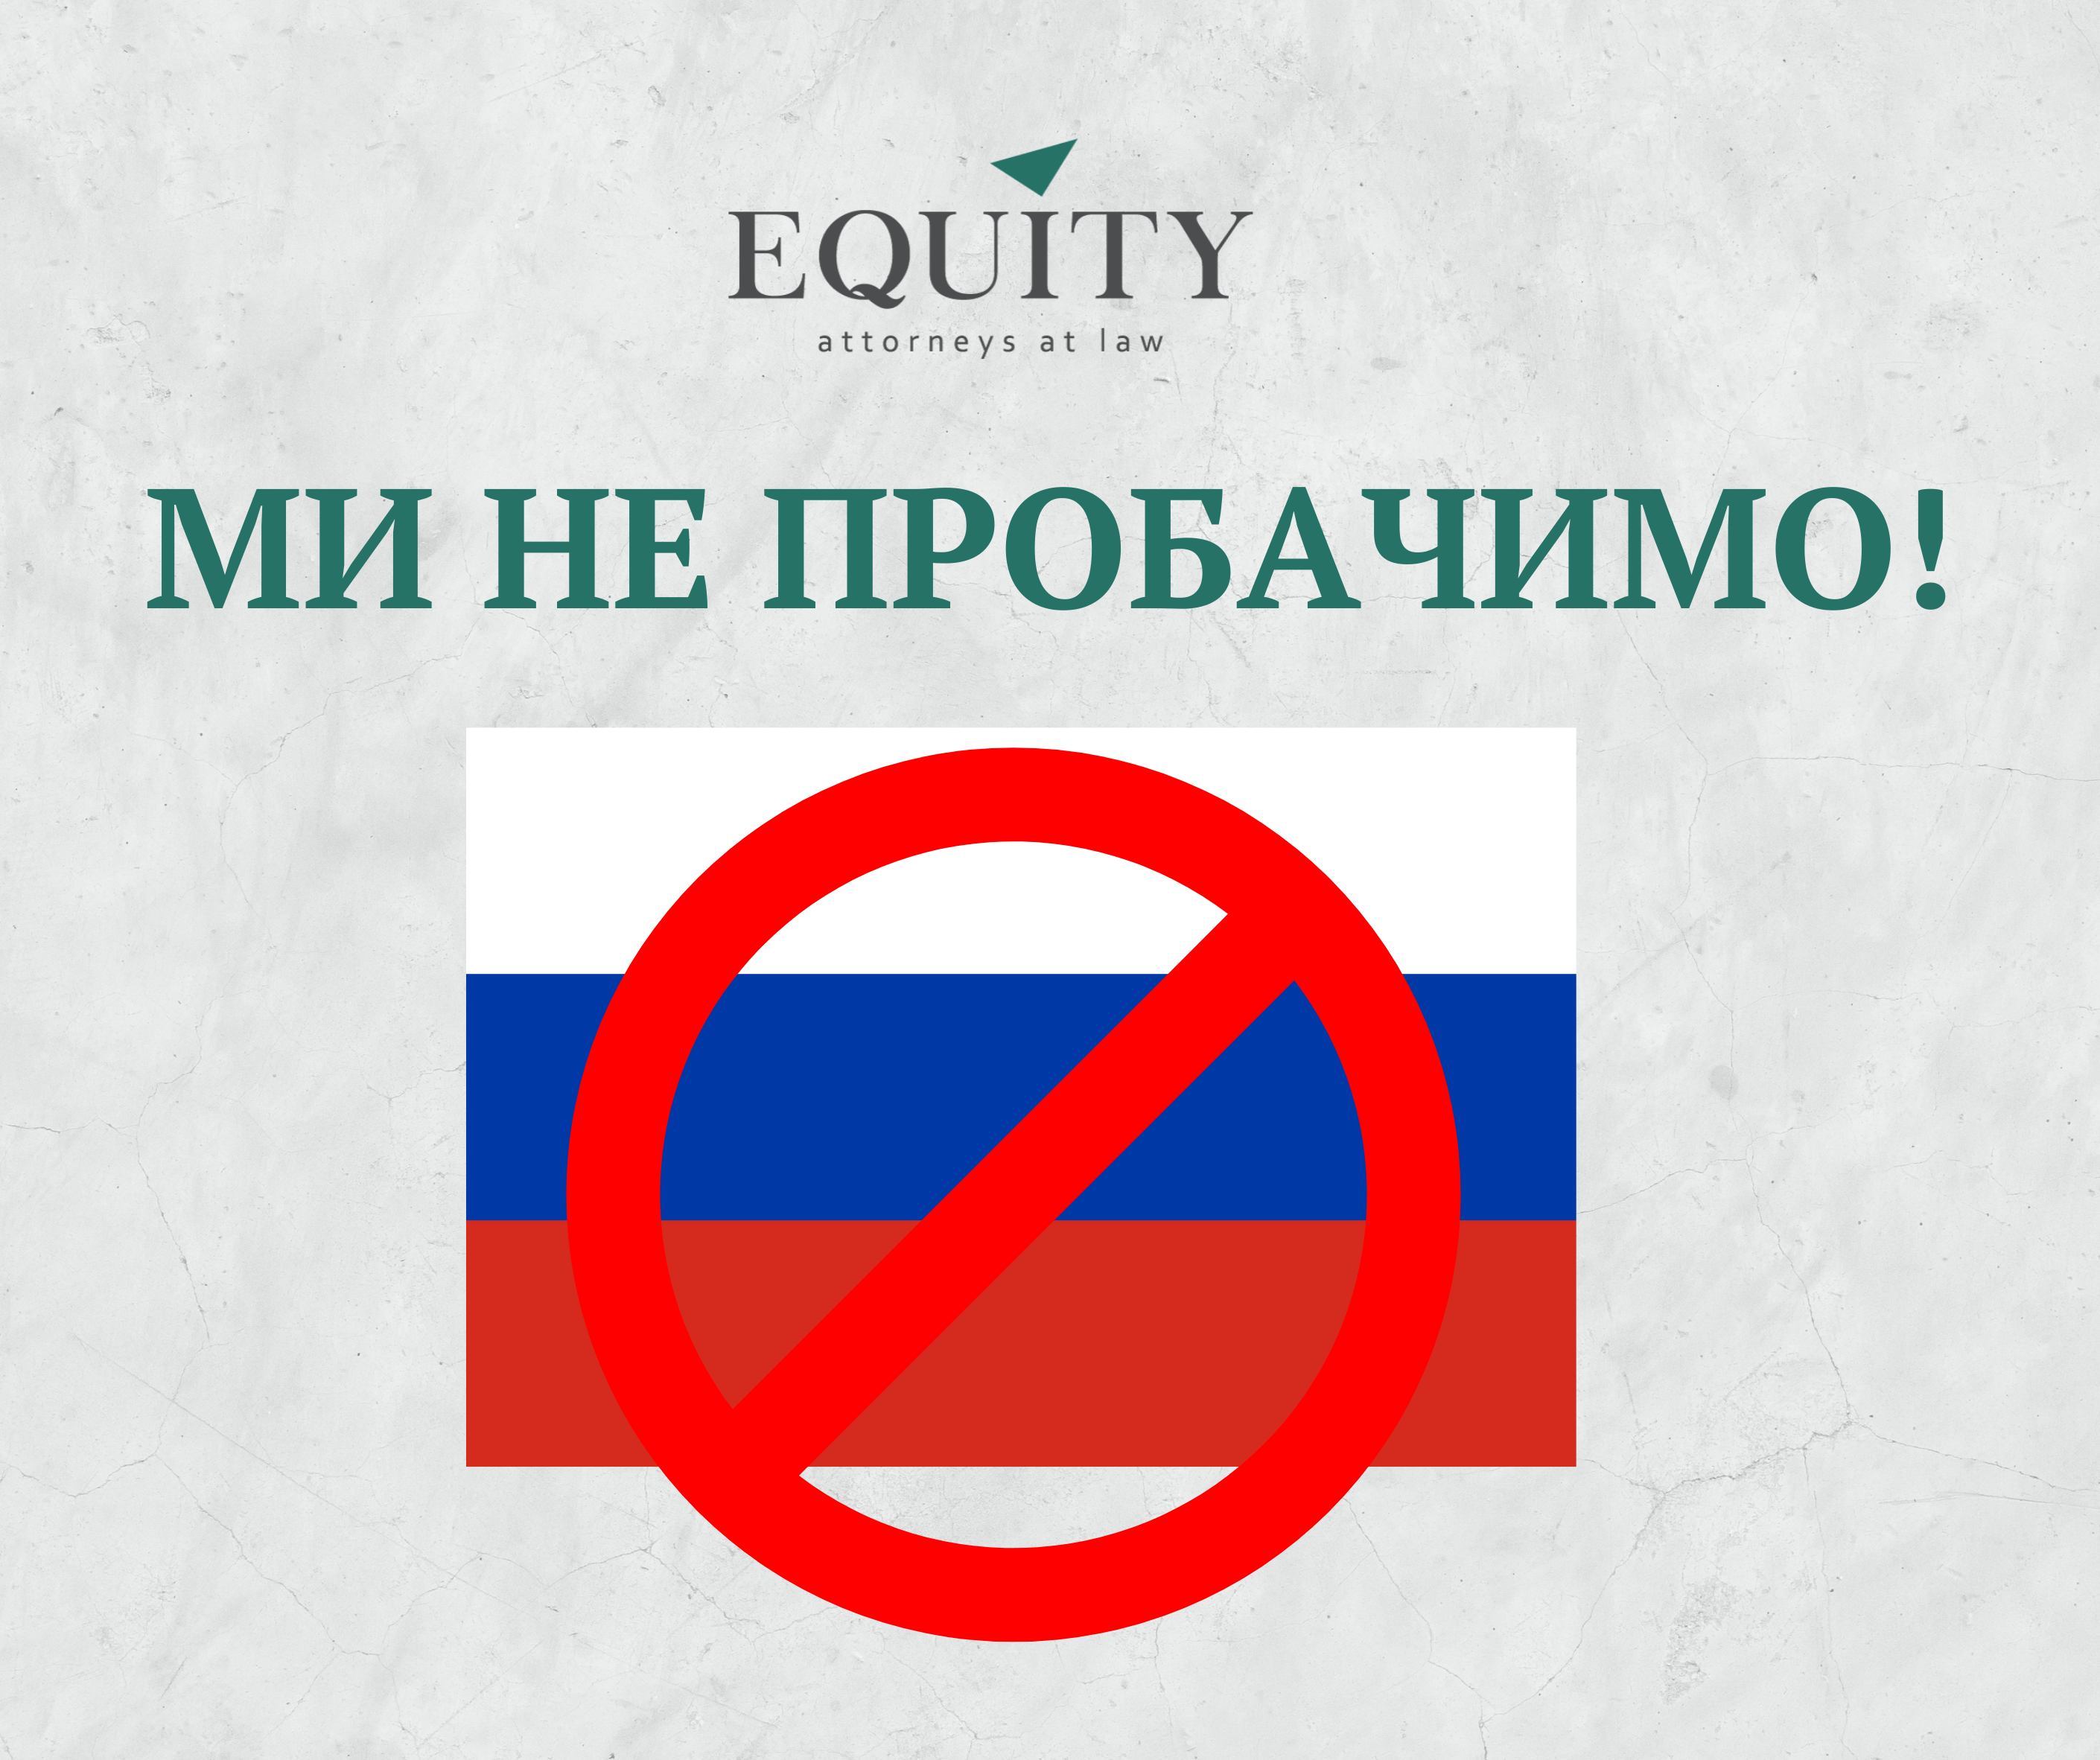 Звернення EQUITY до кожного росіянина!